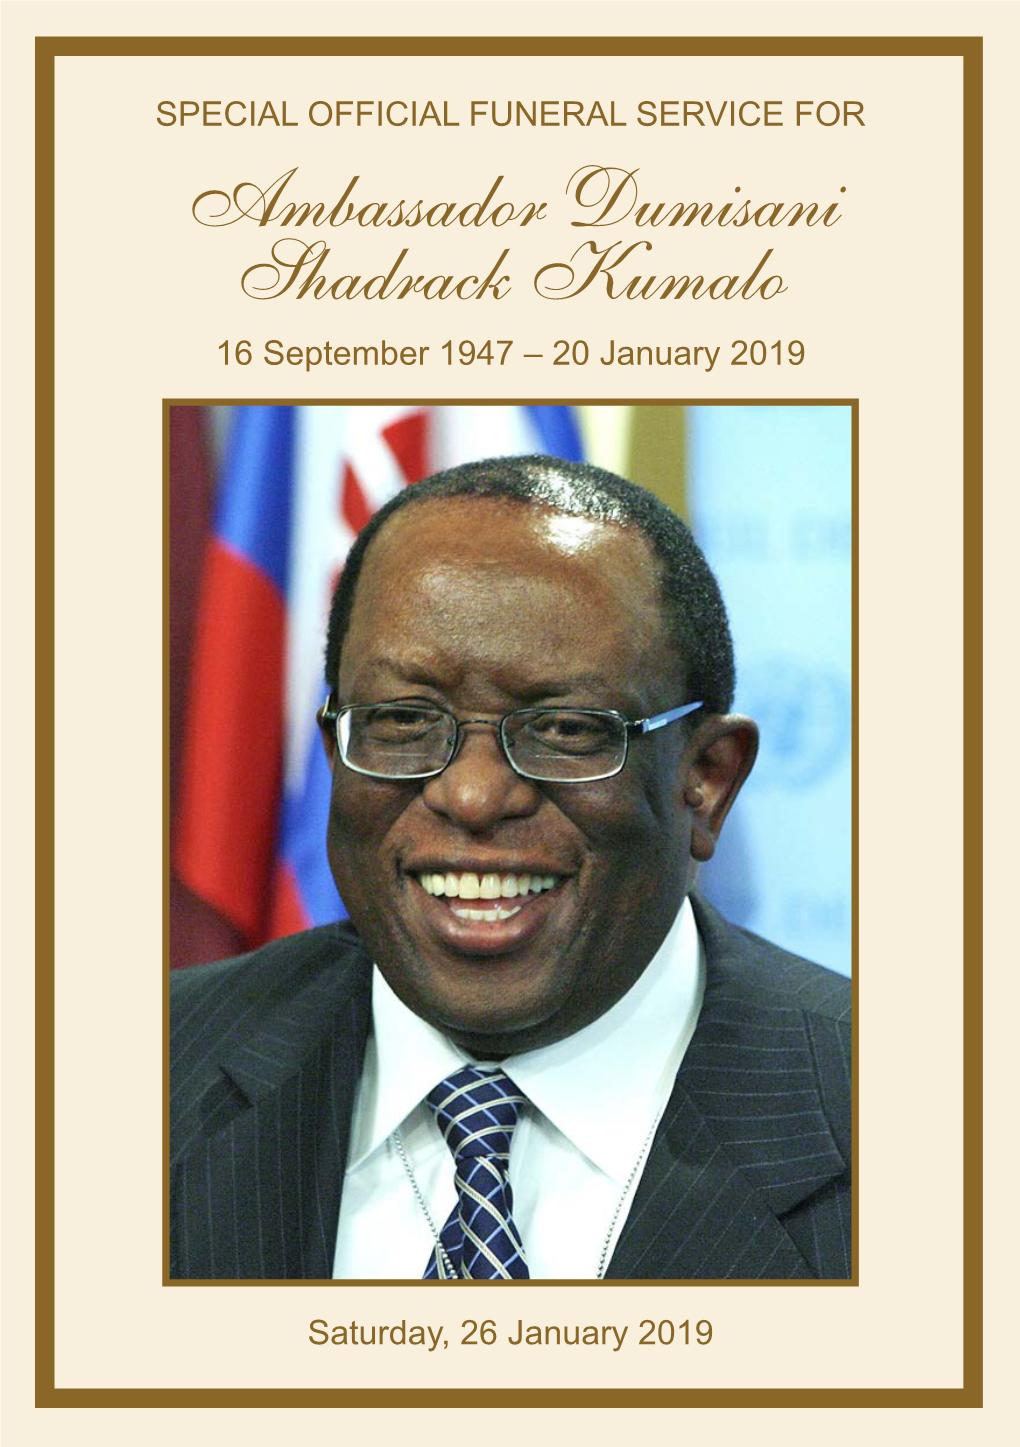 Ambassador Dumisani Shadrack Kumalo 16 September 1947 – 20 January 2019